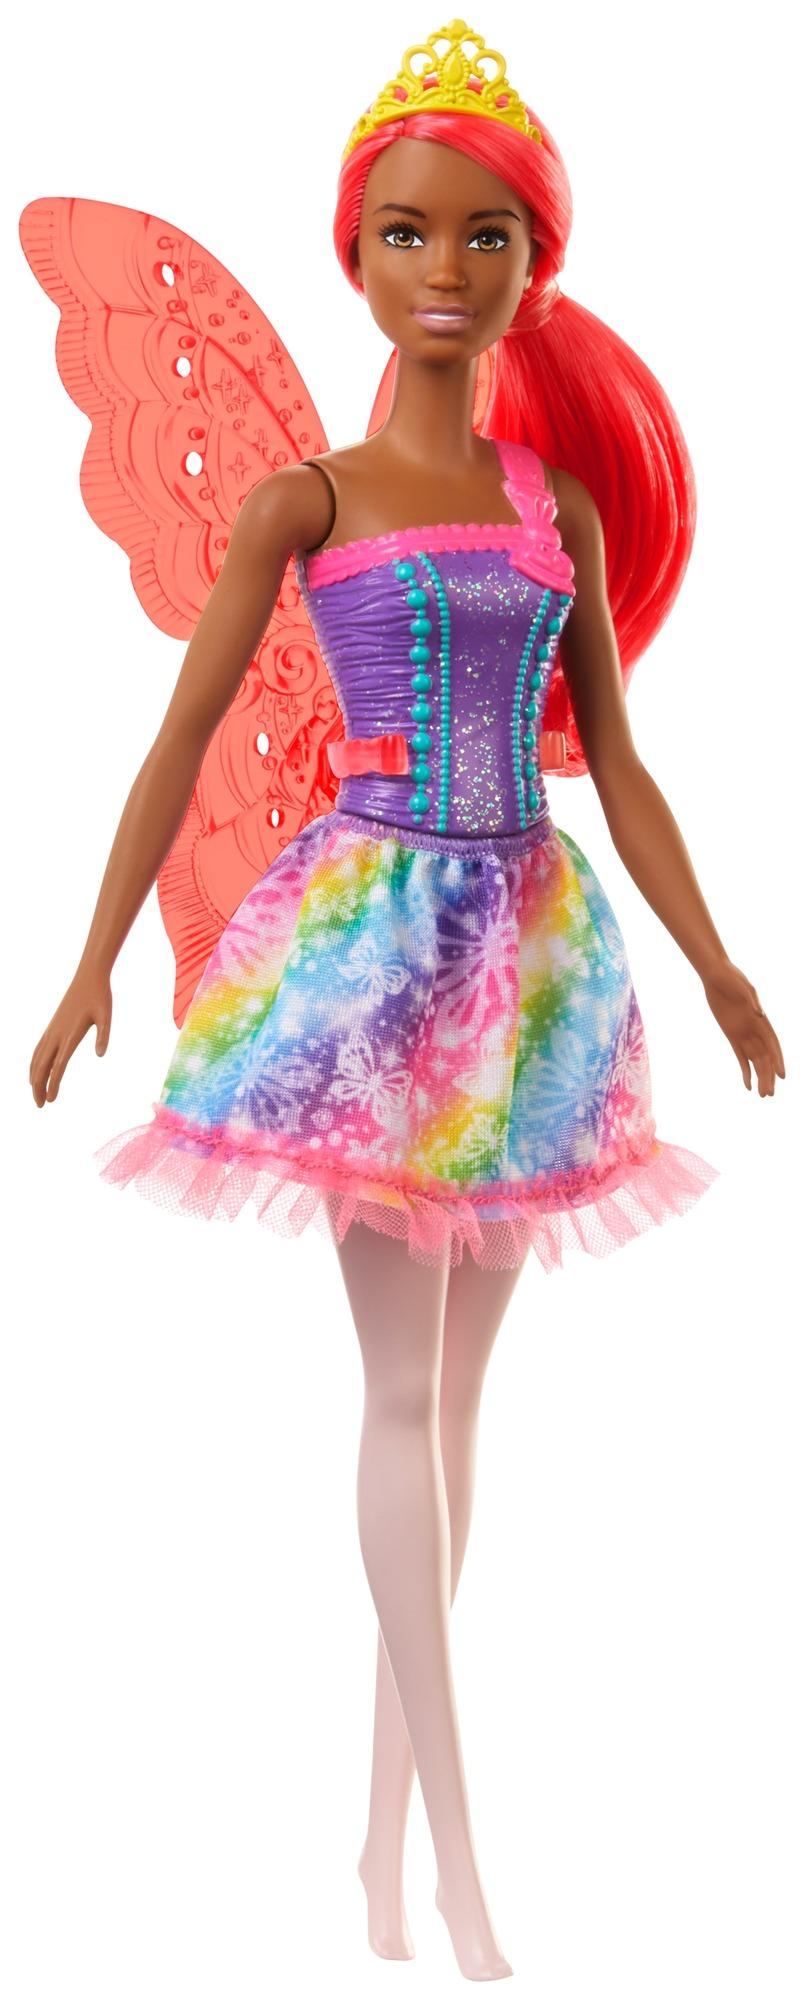 Arena Philadelphia Roman Barbie Pop Dreamtopia Fee Oranje Haar En Vleugels bij Planet Happy